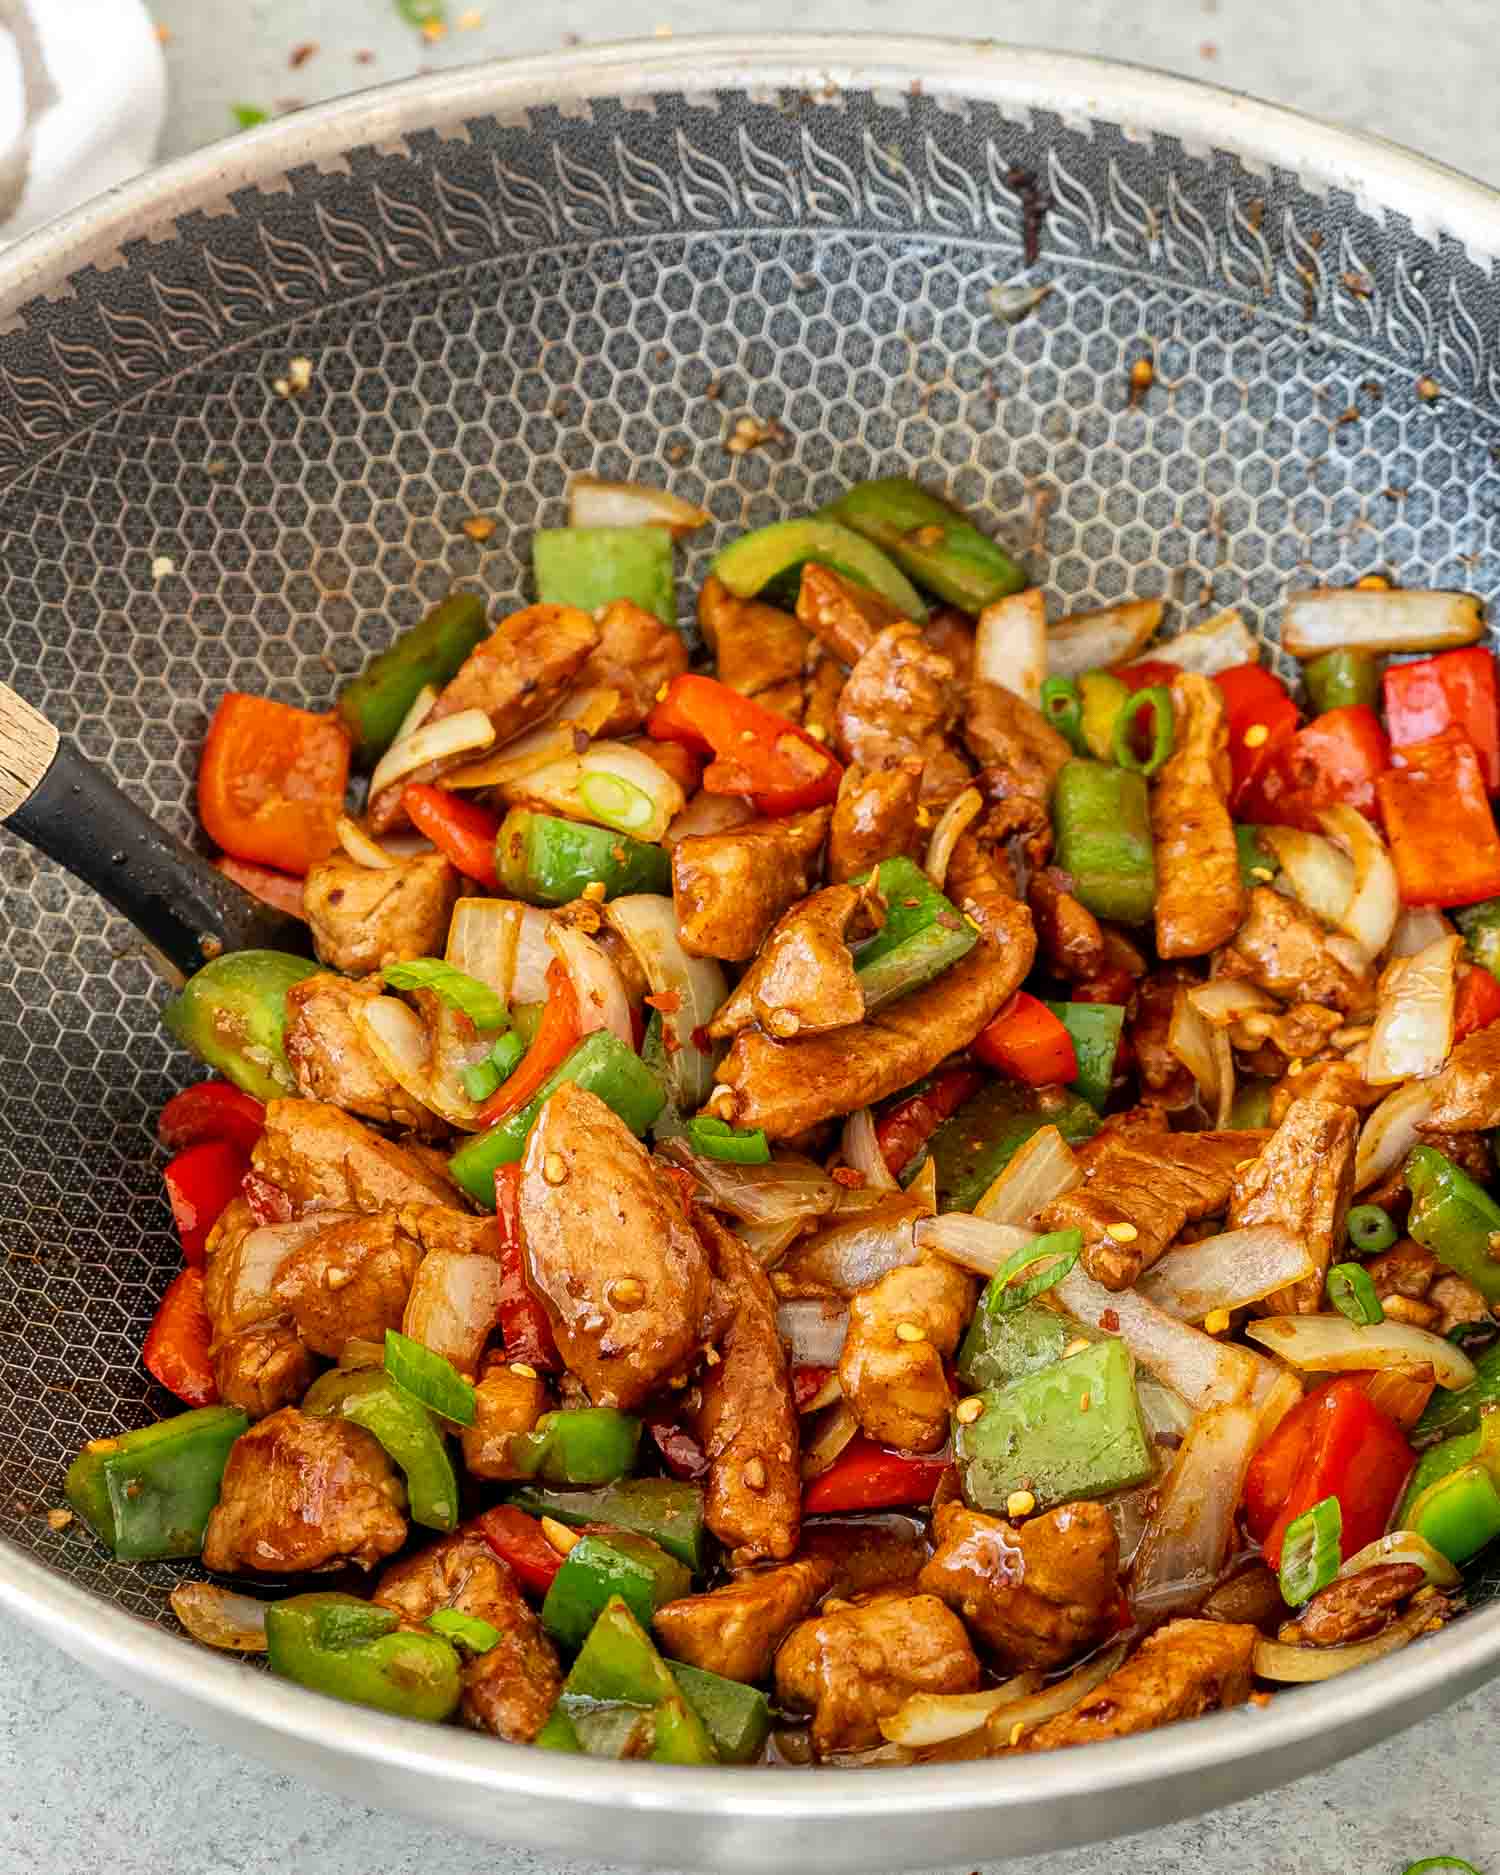 hot off the stove szechuan pork in a wok.